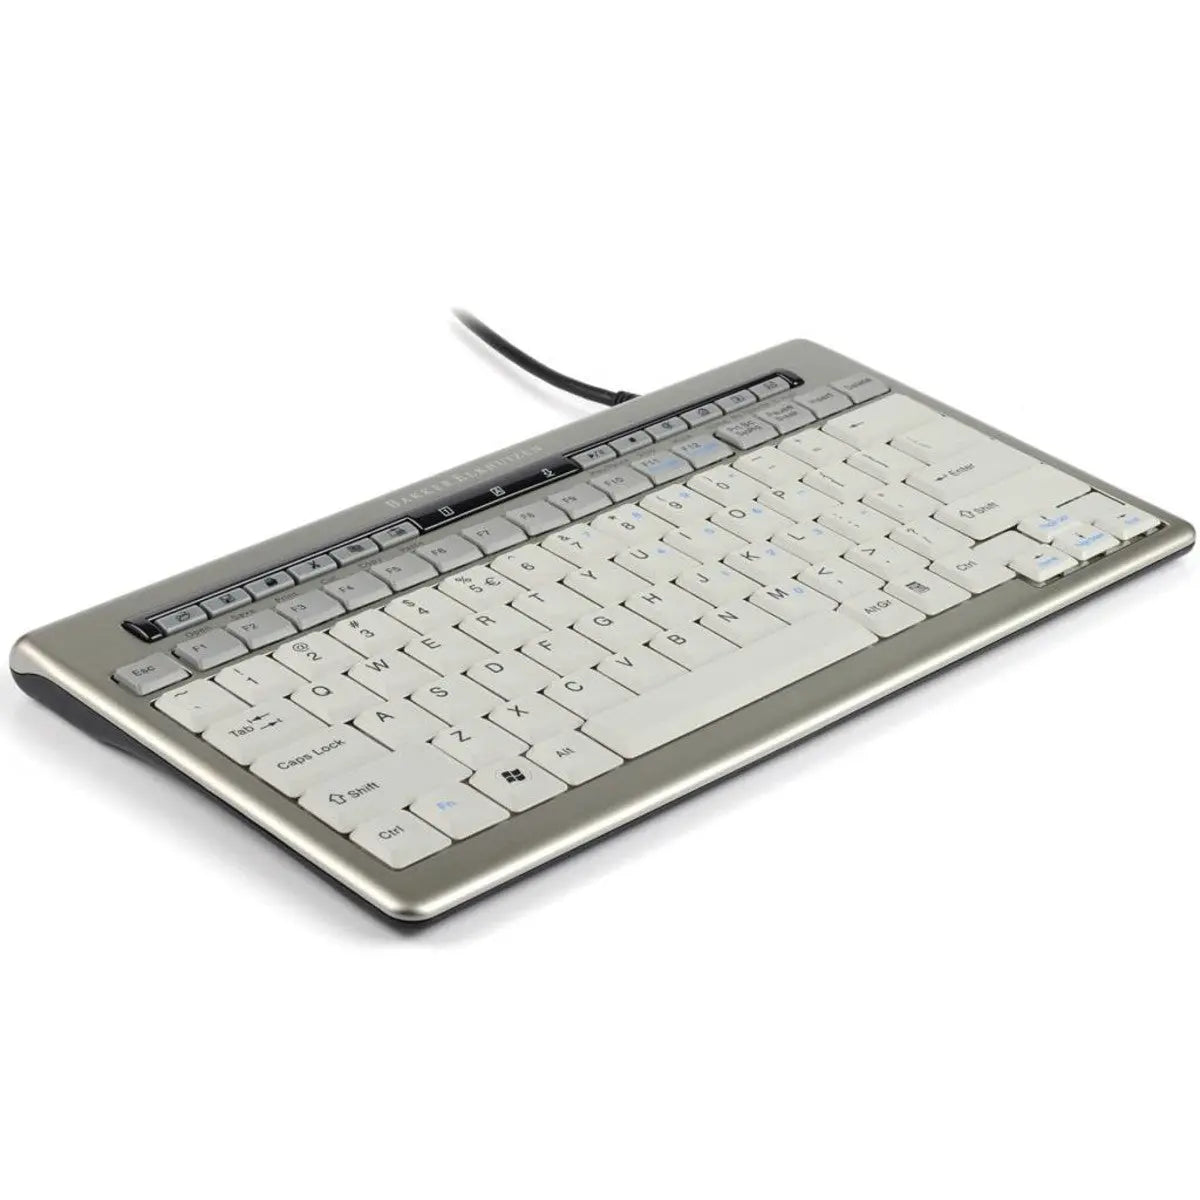 BakkerElkhuizen S-board 840 USB hub toetsenbord - bedraad Bakker Elkhuizen